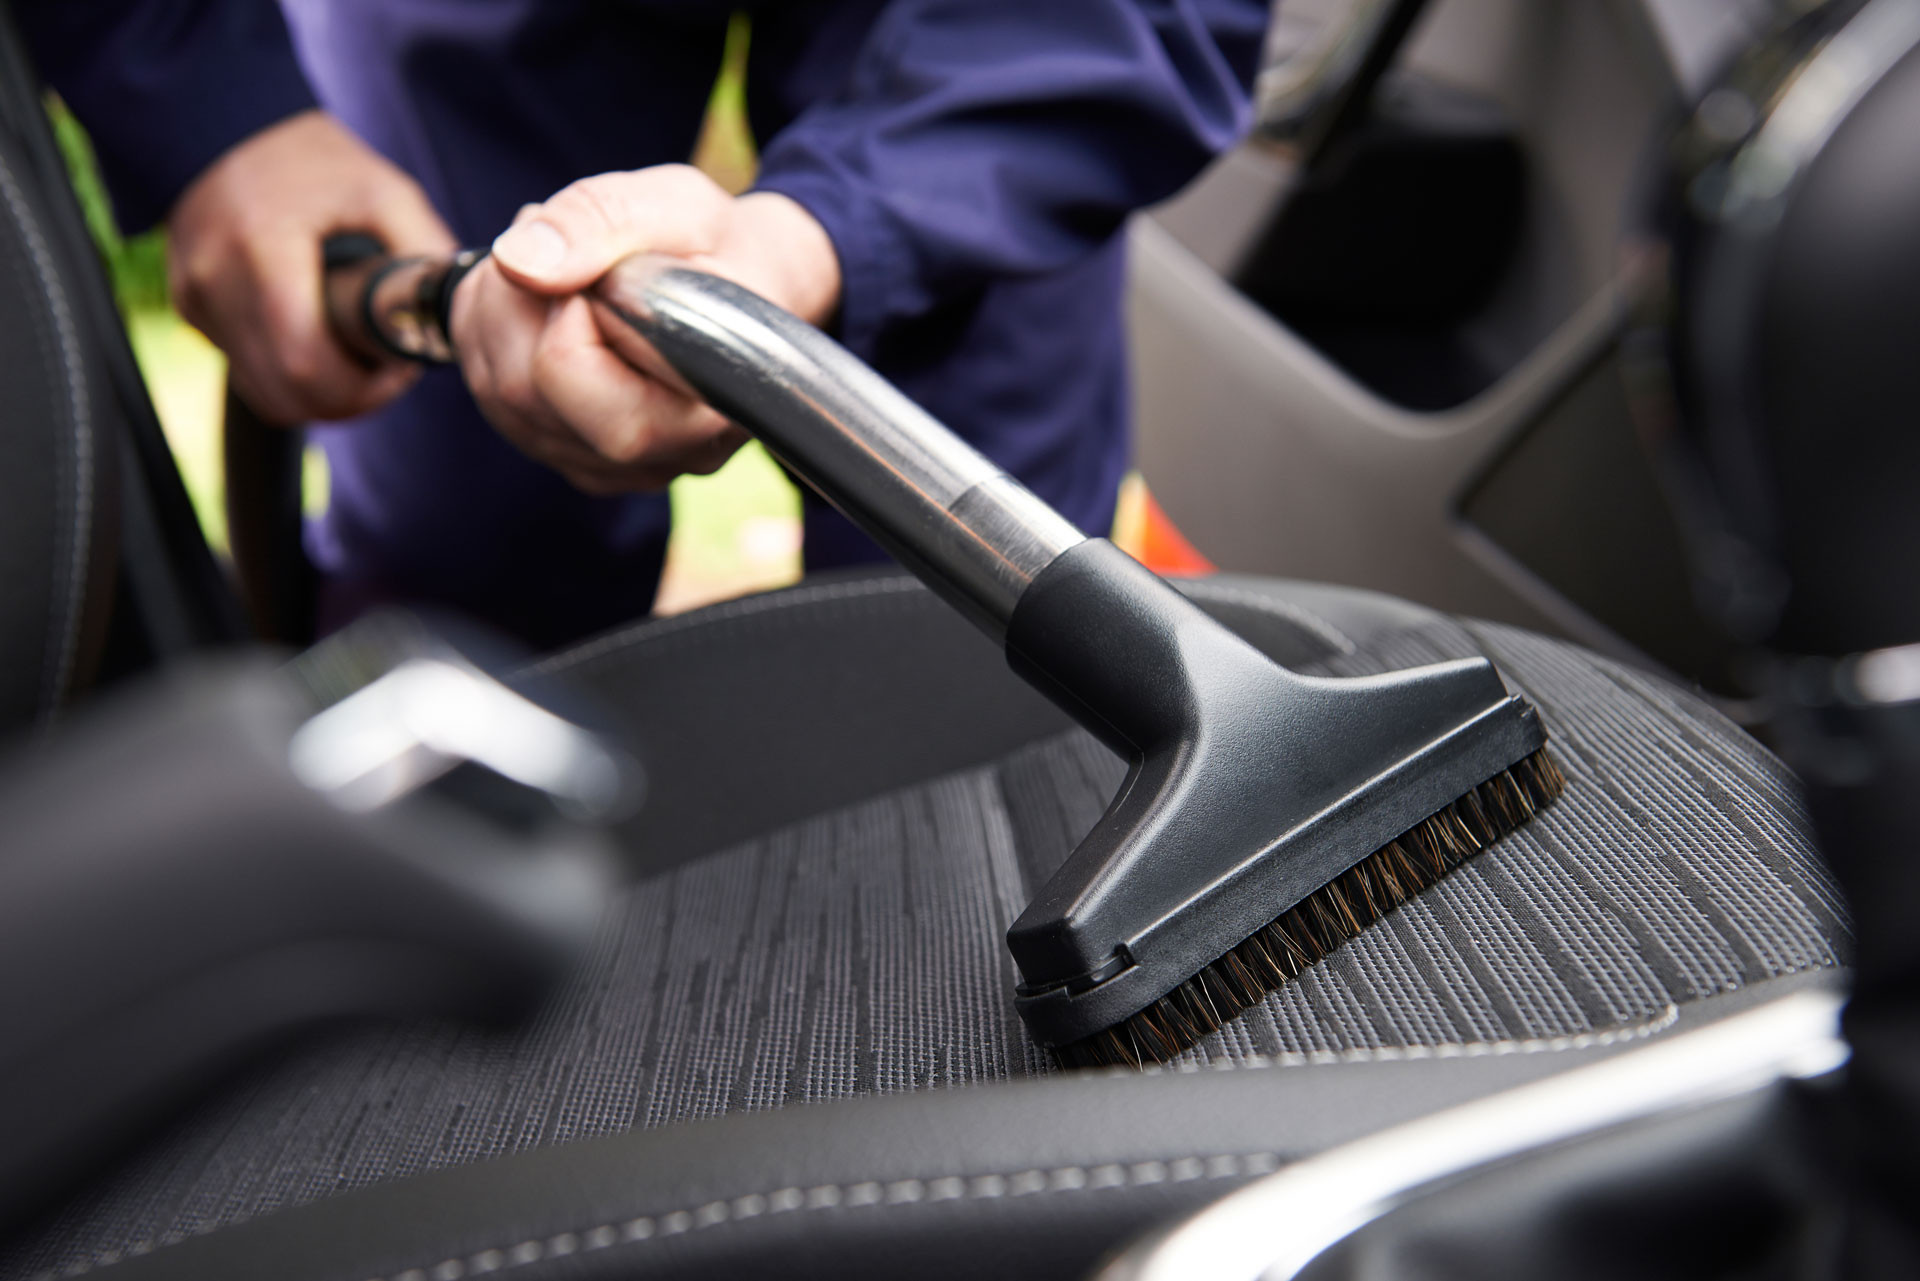 Higienização interna e do Ar Condicionado - Renault Clio Sedan